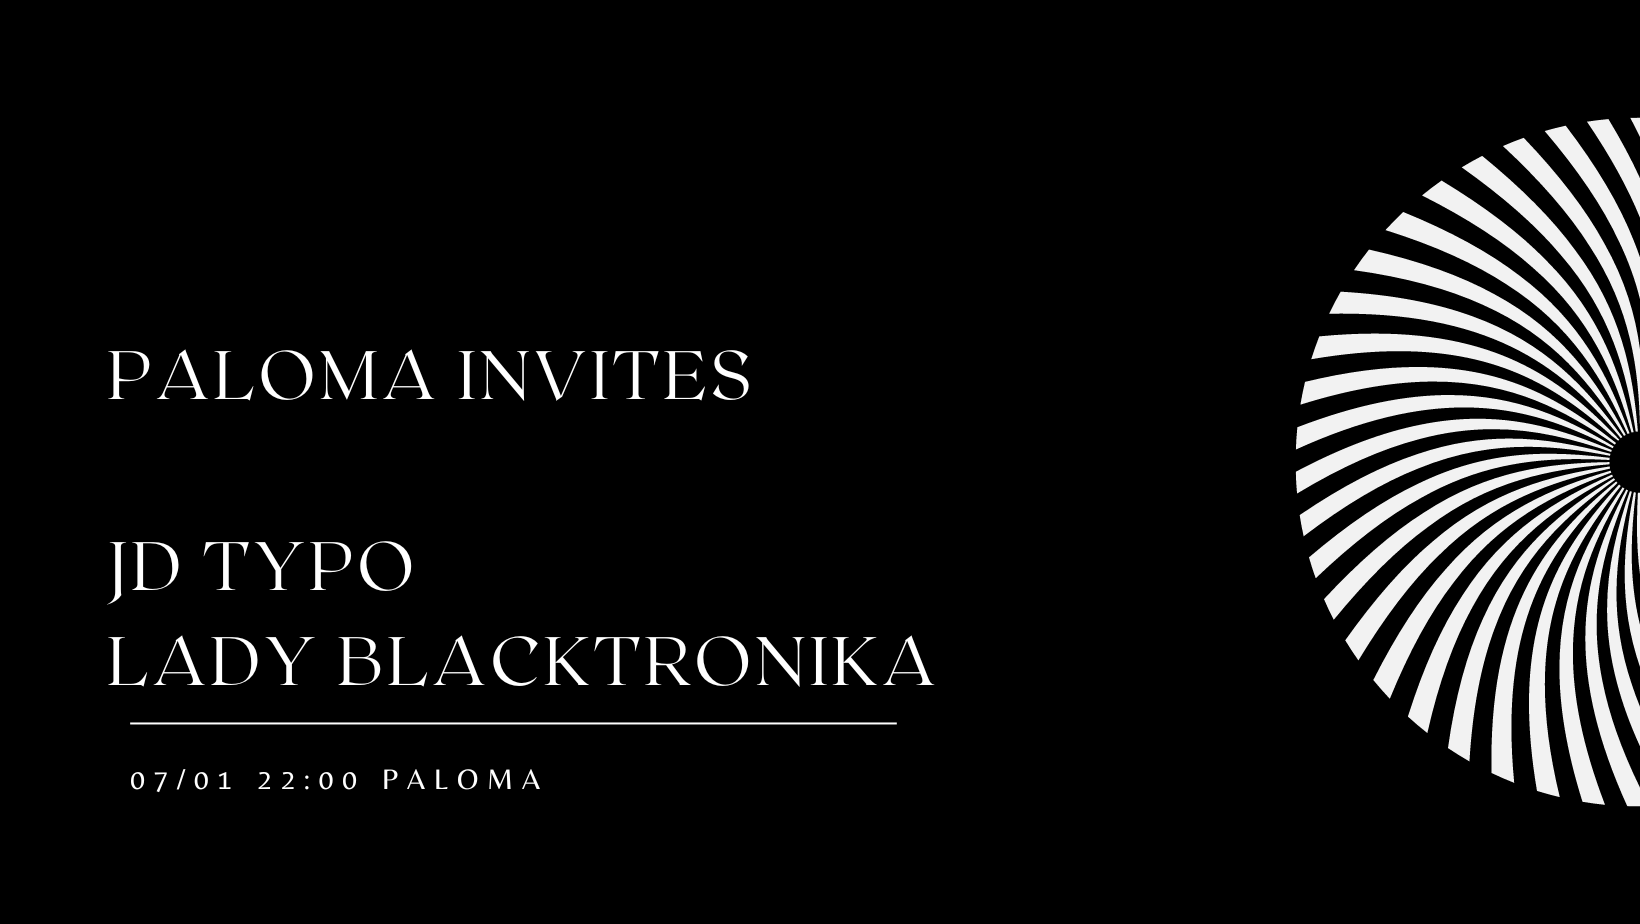 Paloma invites - フライヤー表